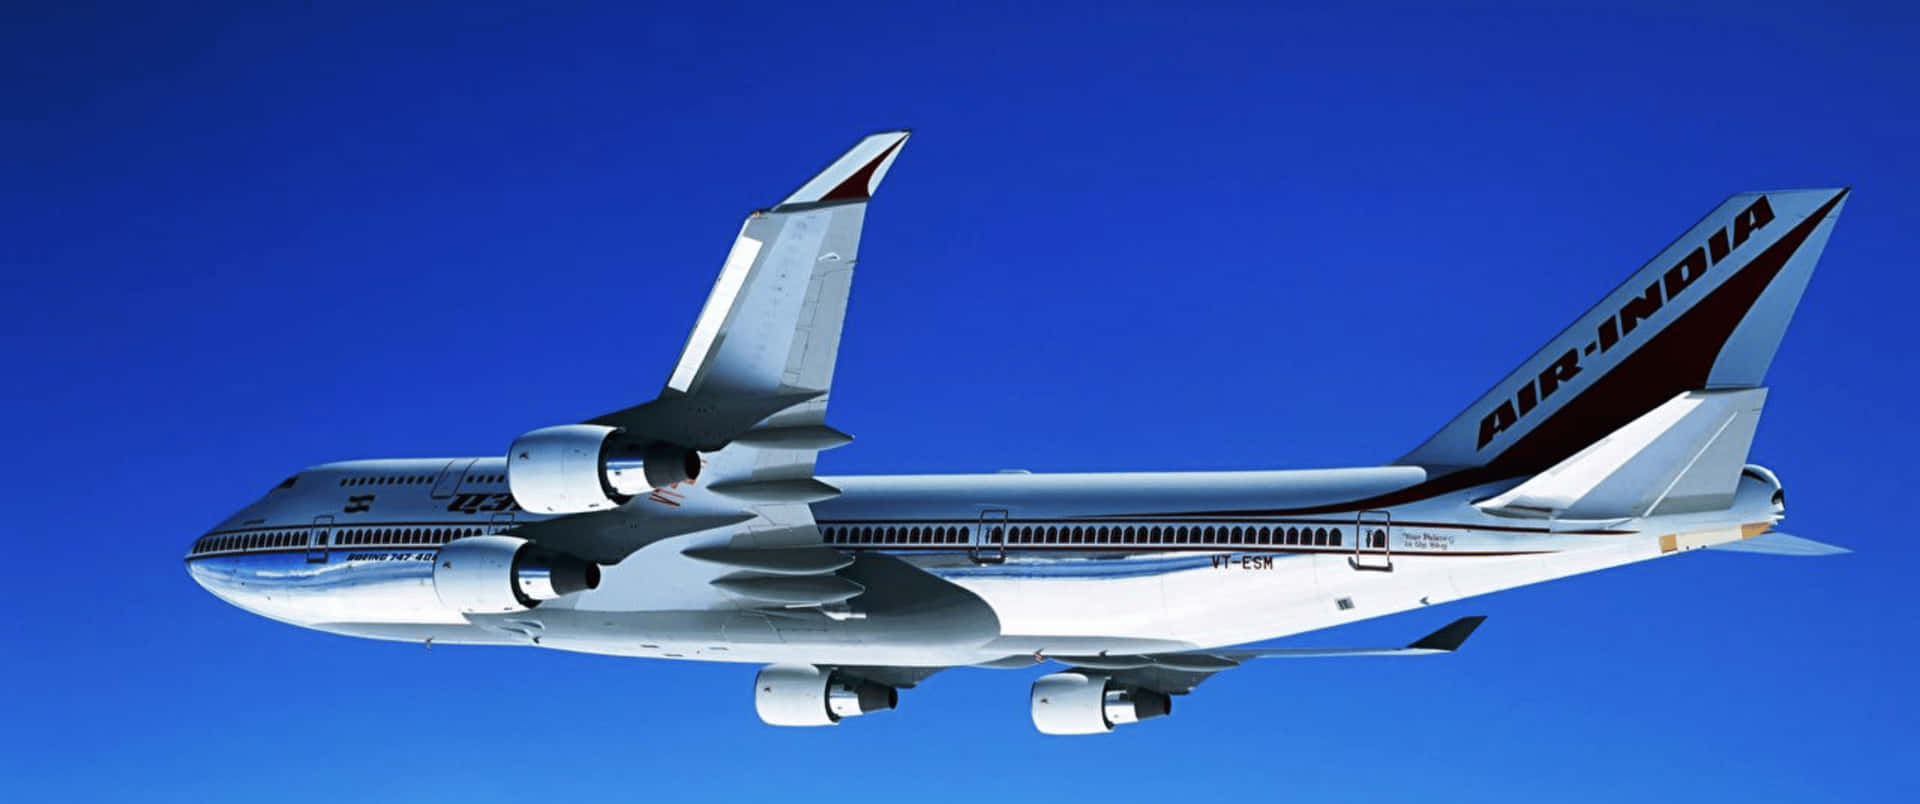 3440x1440pflygplan Boeing 747 400 Bakgrundsbild